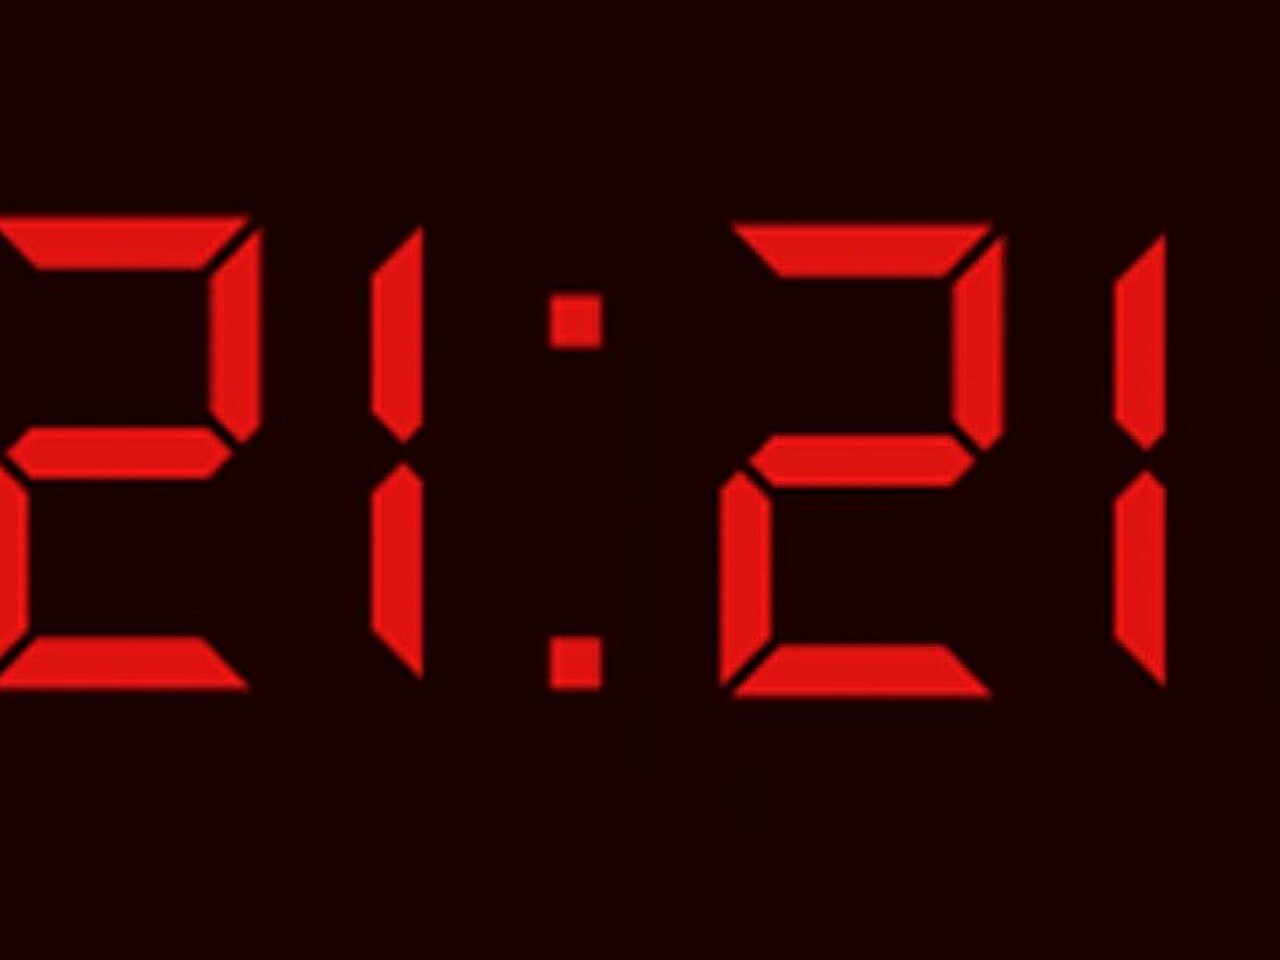 17 28 на часах. Цифры на электронных часах. 11 11 Электронные часы. Первые цифровые часы. Часы повторяющиеся цифры на часах.